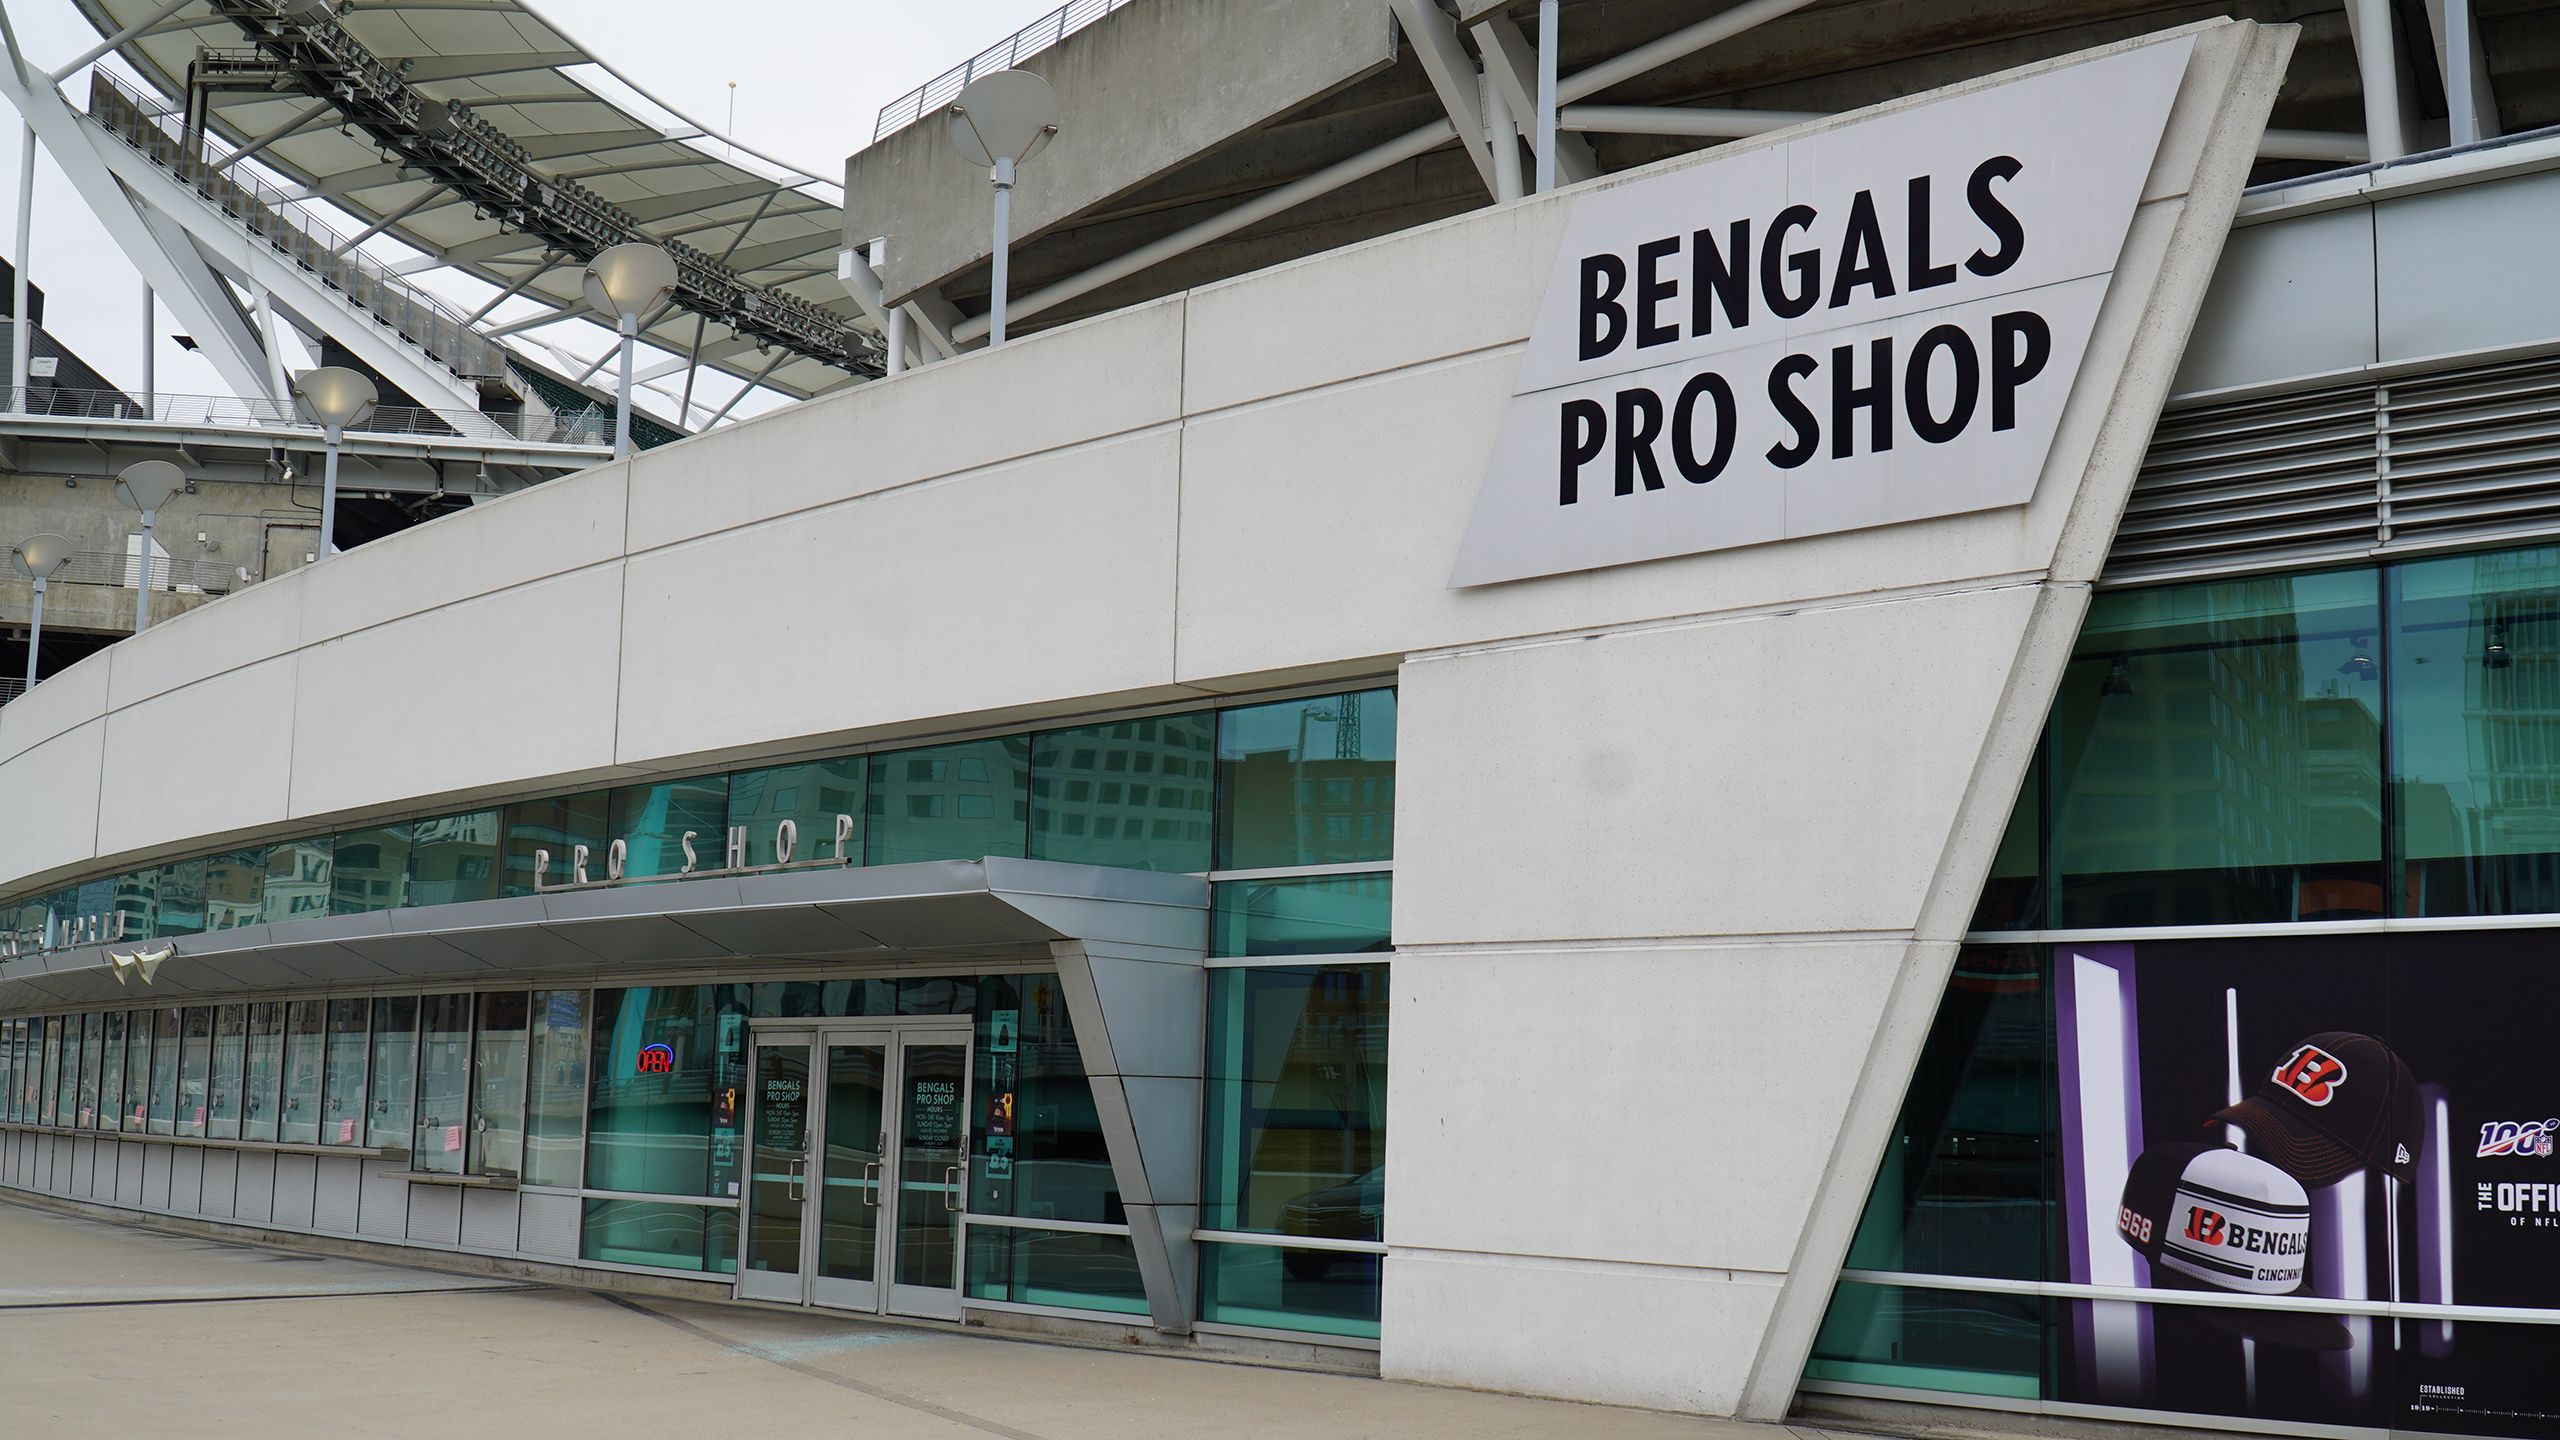 the bengals pro shop